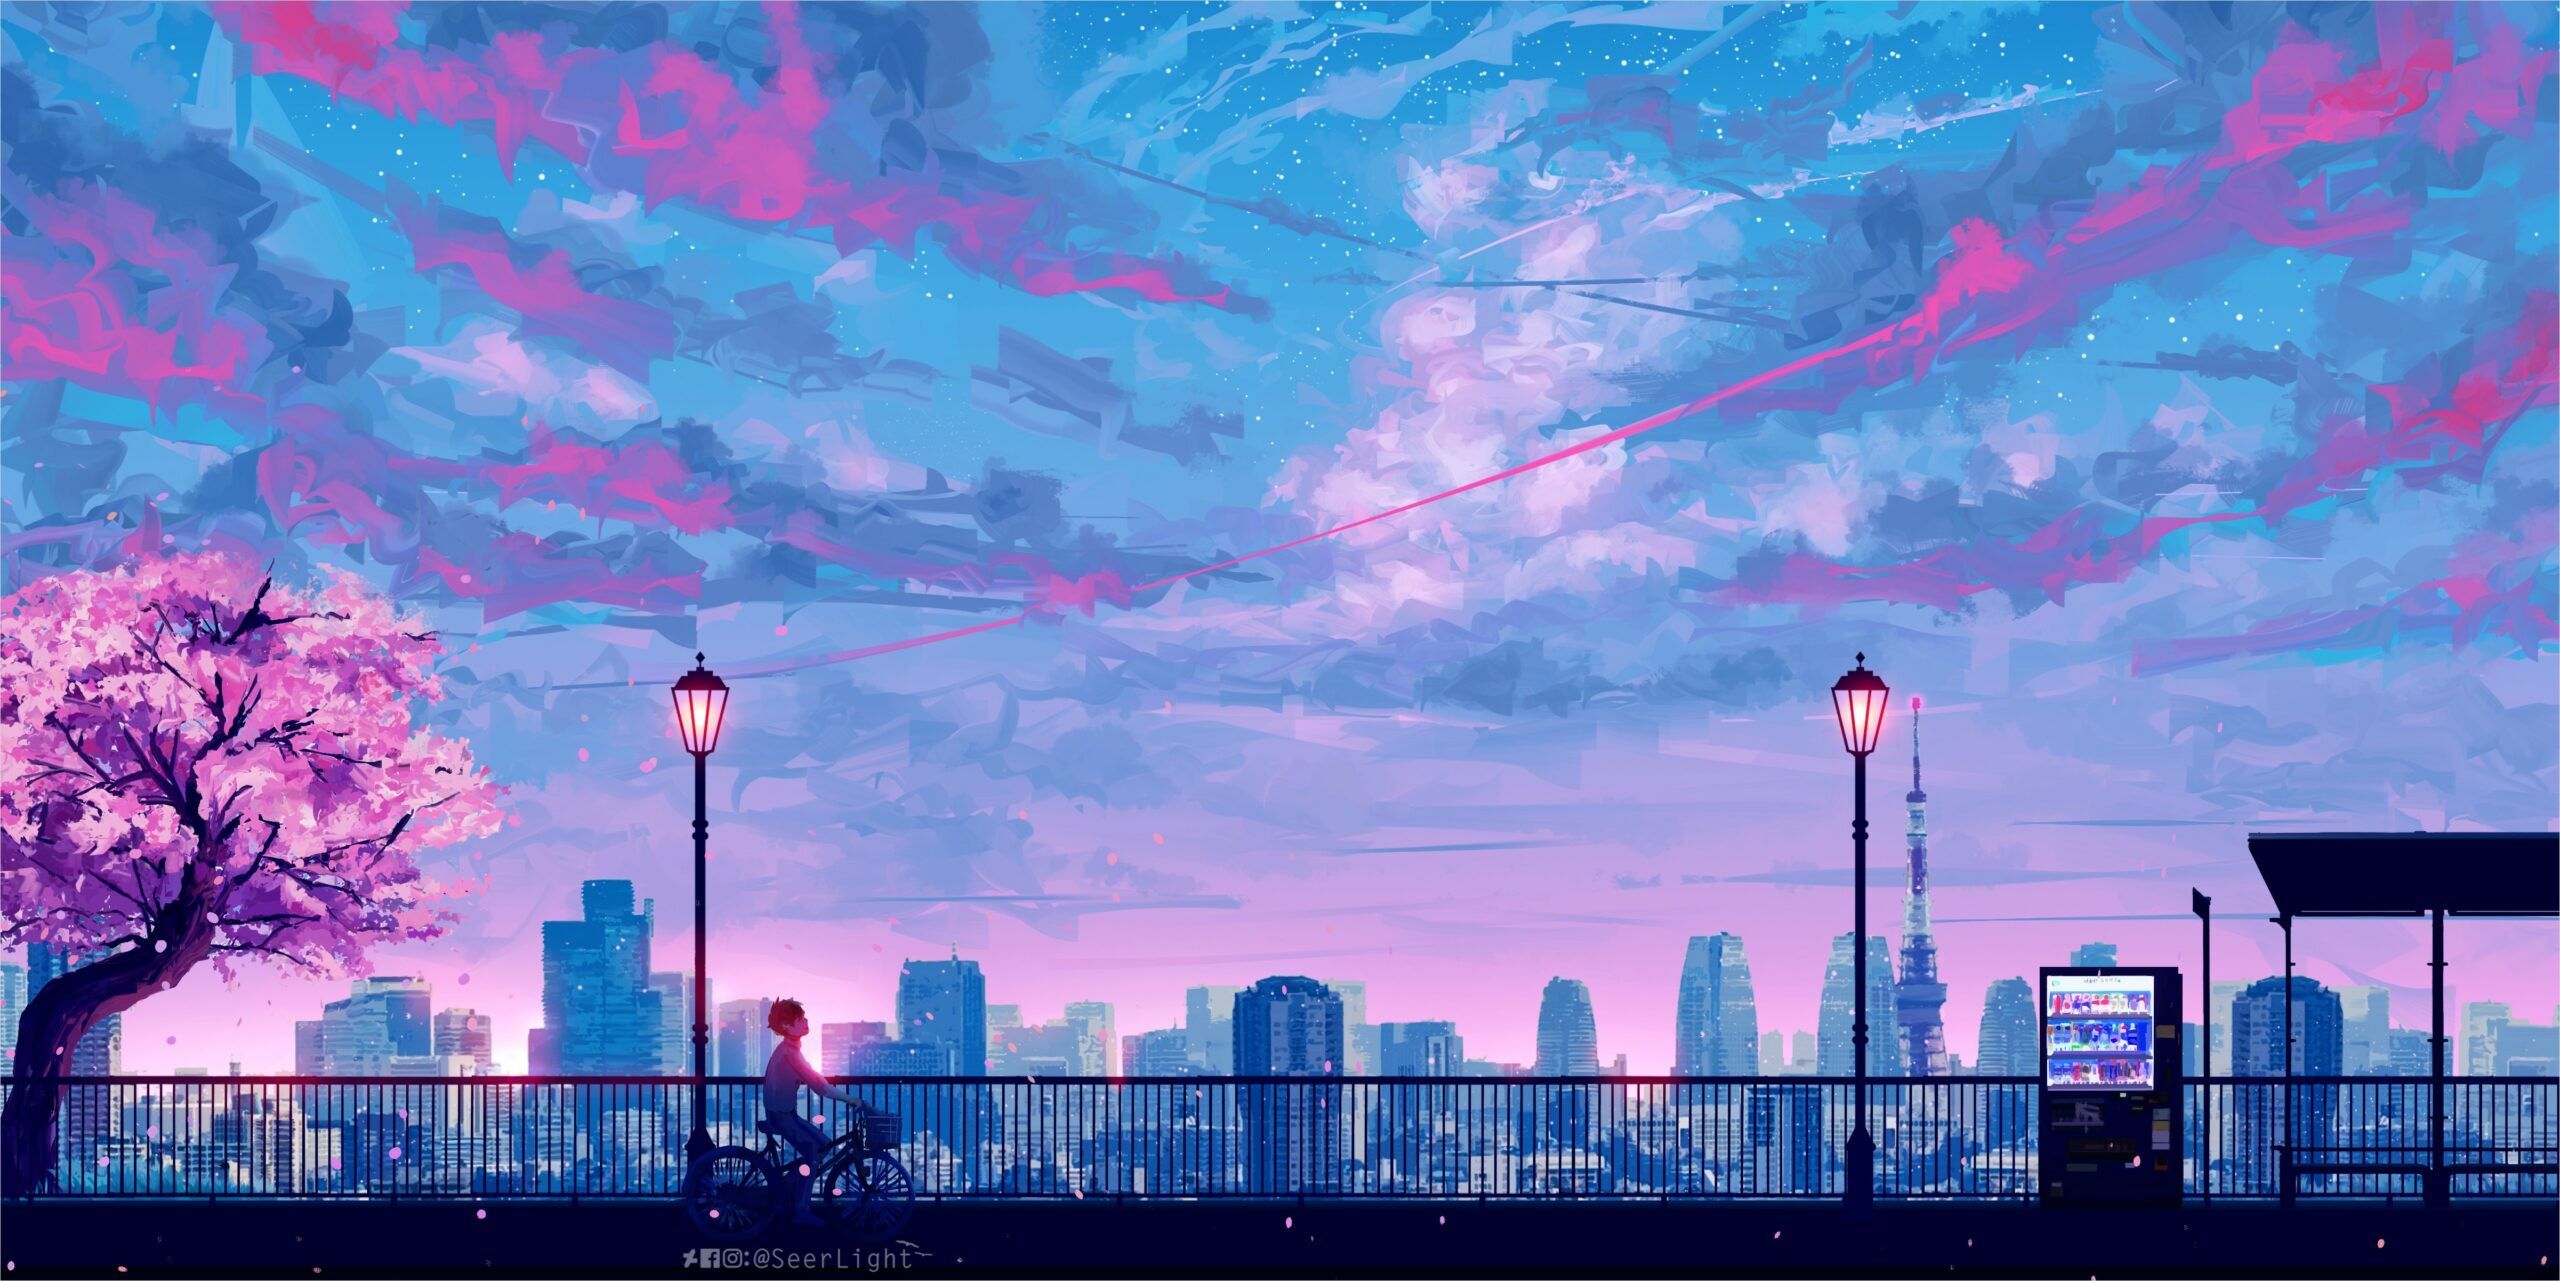 4k Anime Landscape Wallpaper. Papel de parede da cidade, Papel de parede pc, Papel de parede do notebook